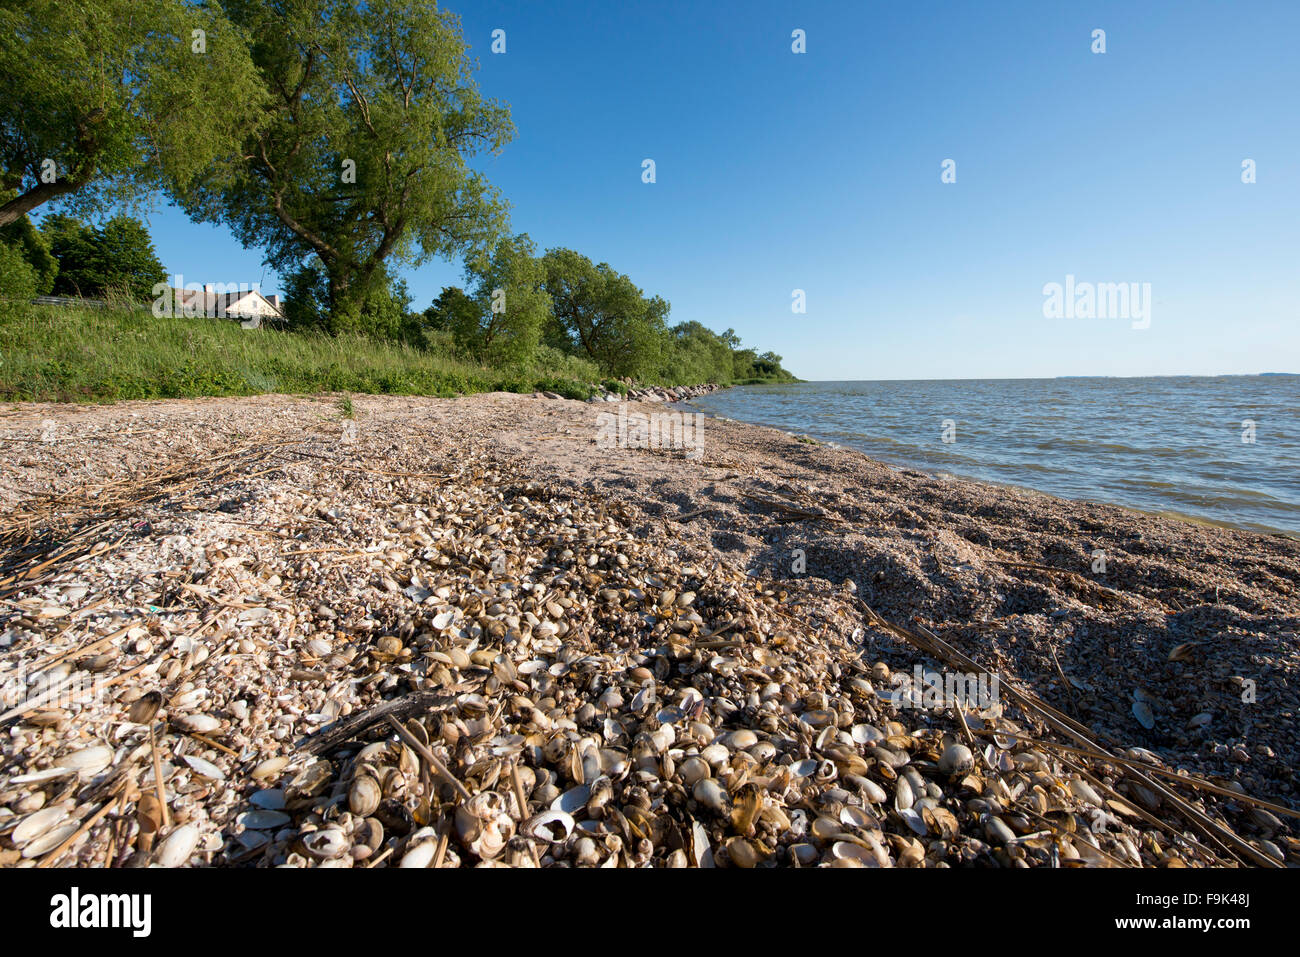 beach at vente, vente cape (ventes ragas), nemunas delta, curonian lagoon (kursiu marios), lithuania Stock Photo